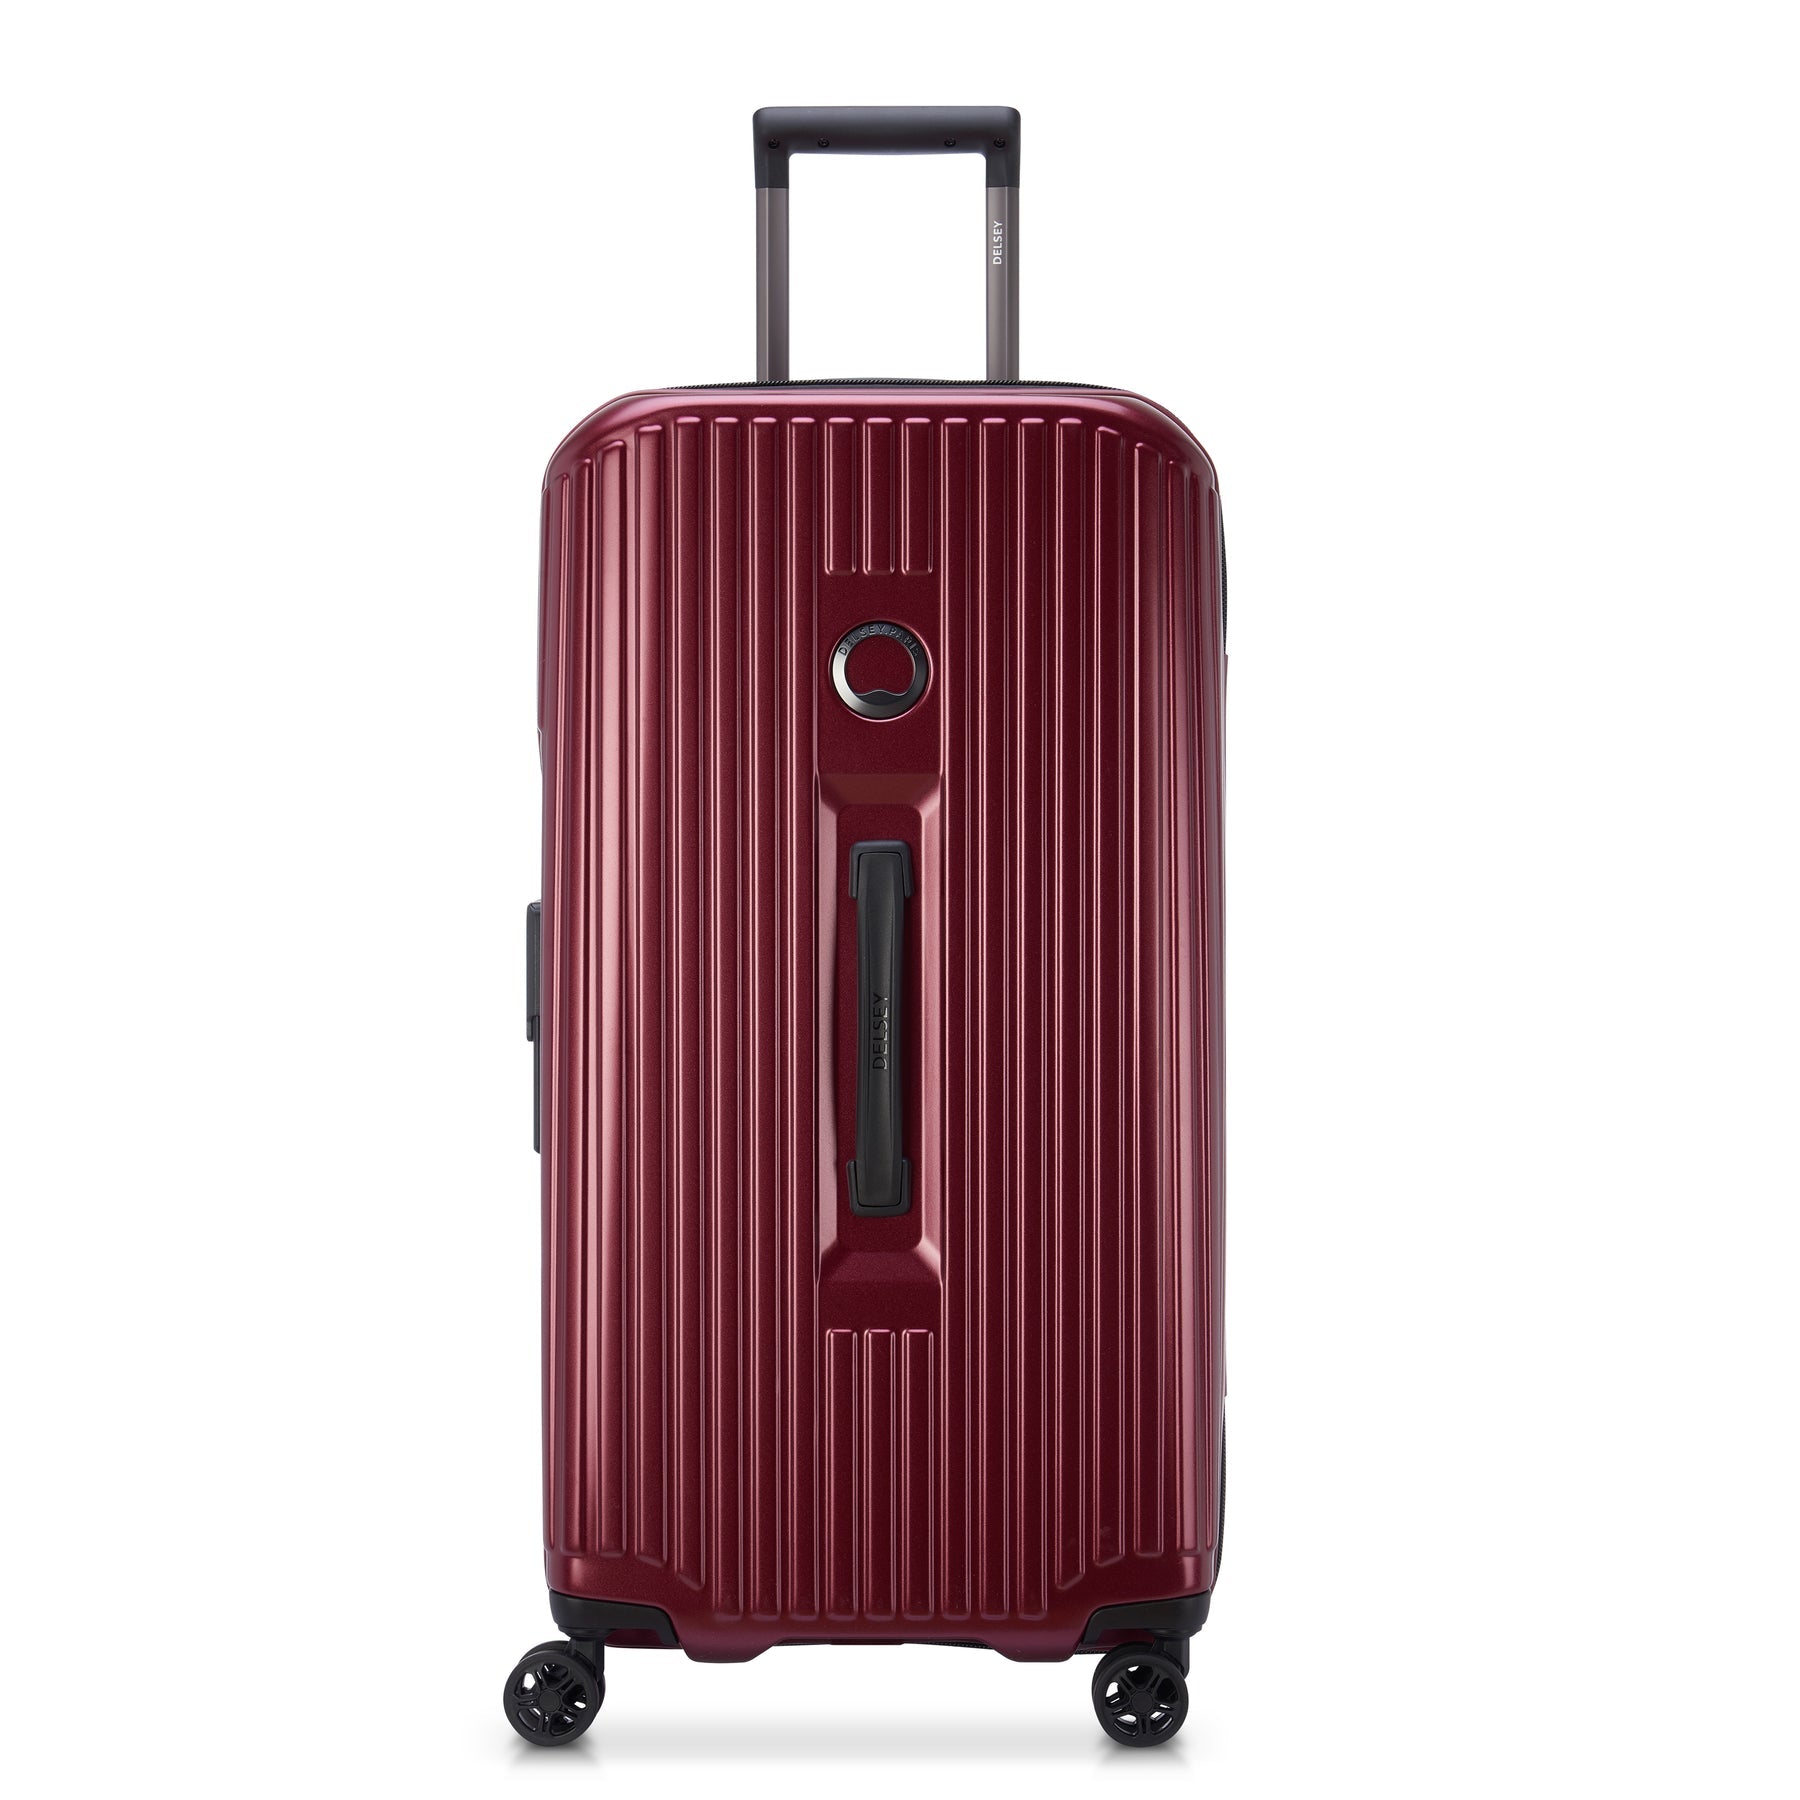 DELSEY デルセー ソフトスーツケース キャリーバッグ 赤 - トラベルバッグ